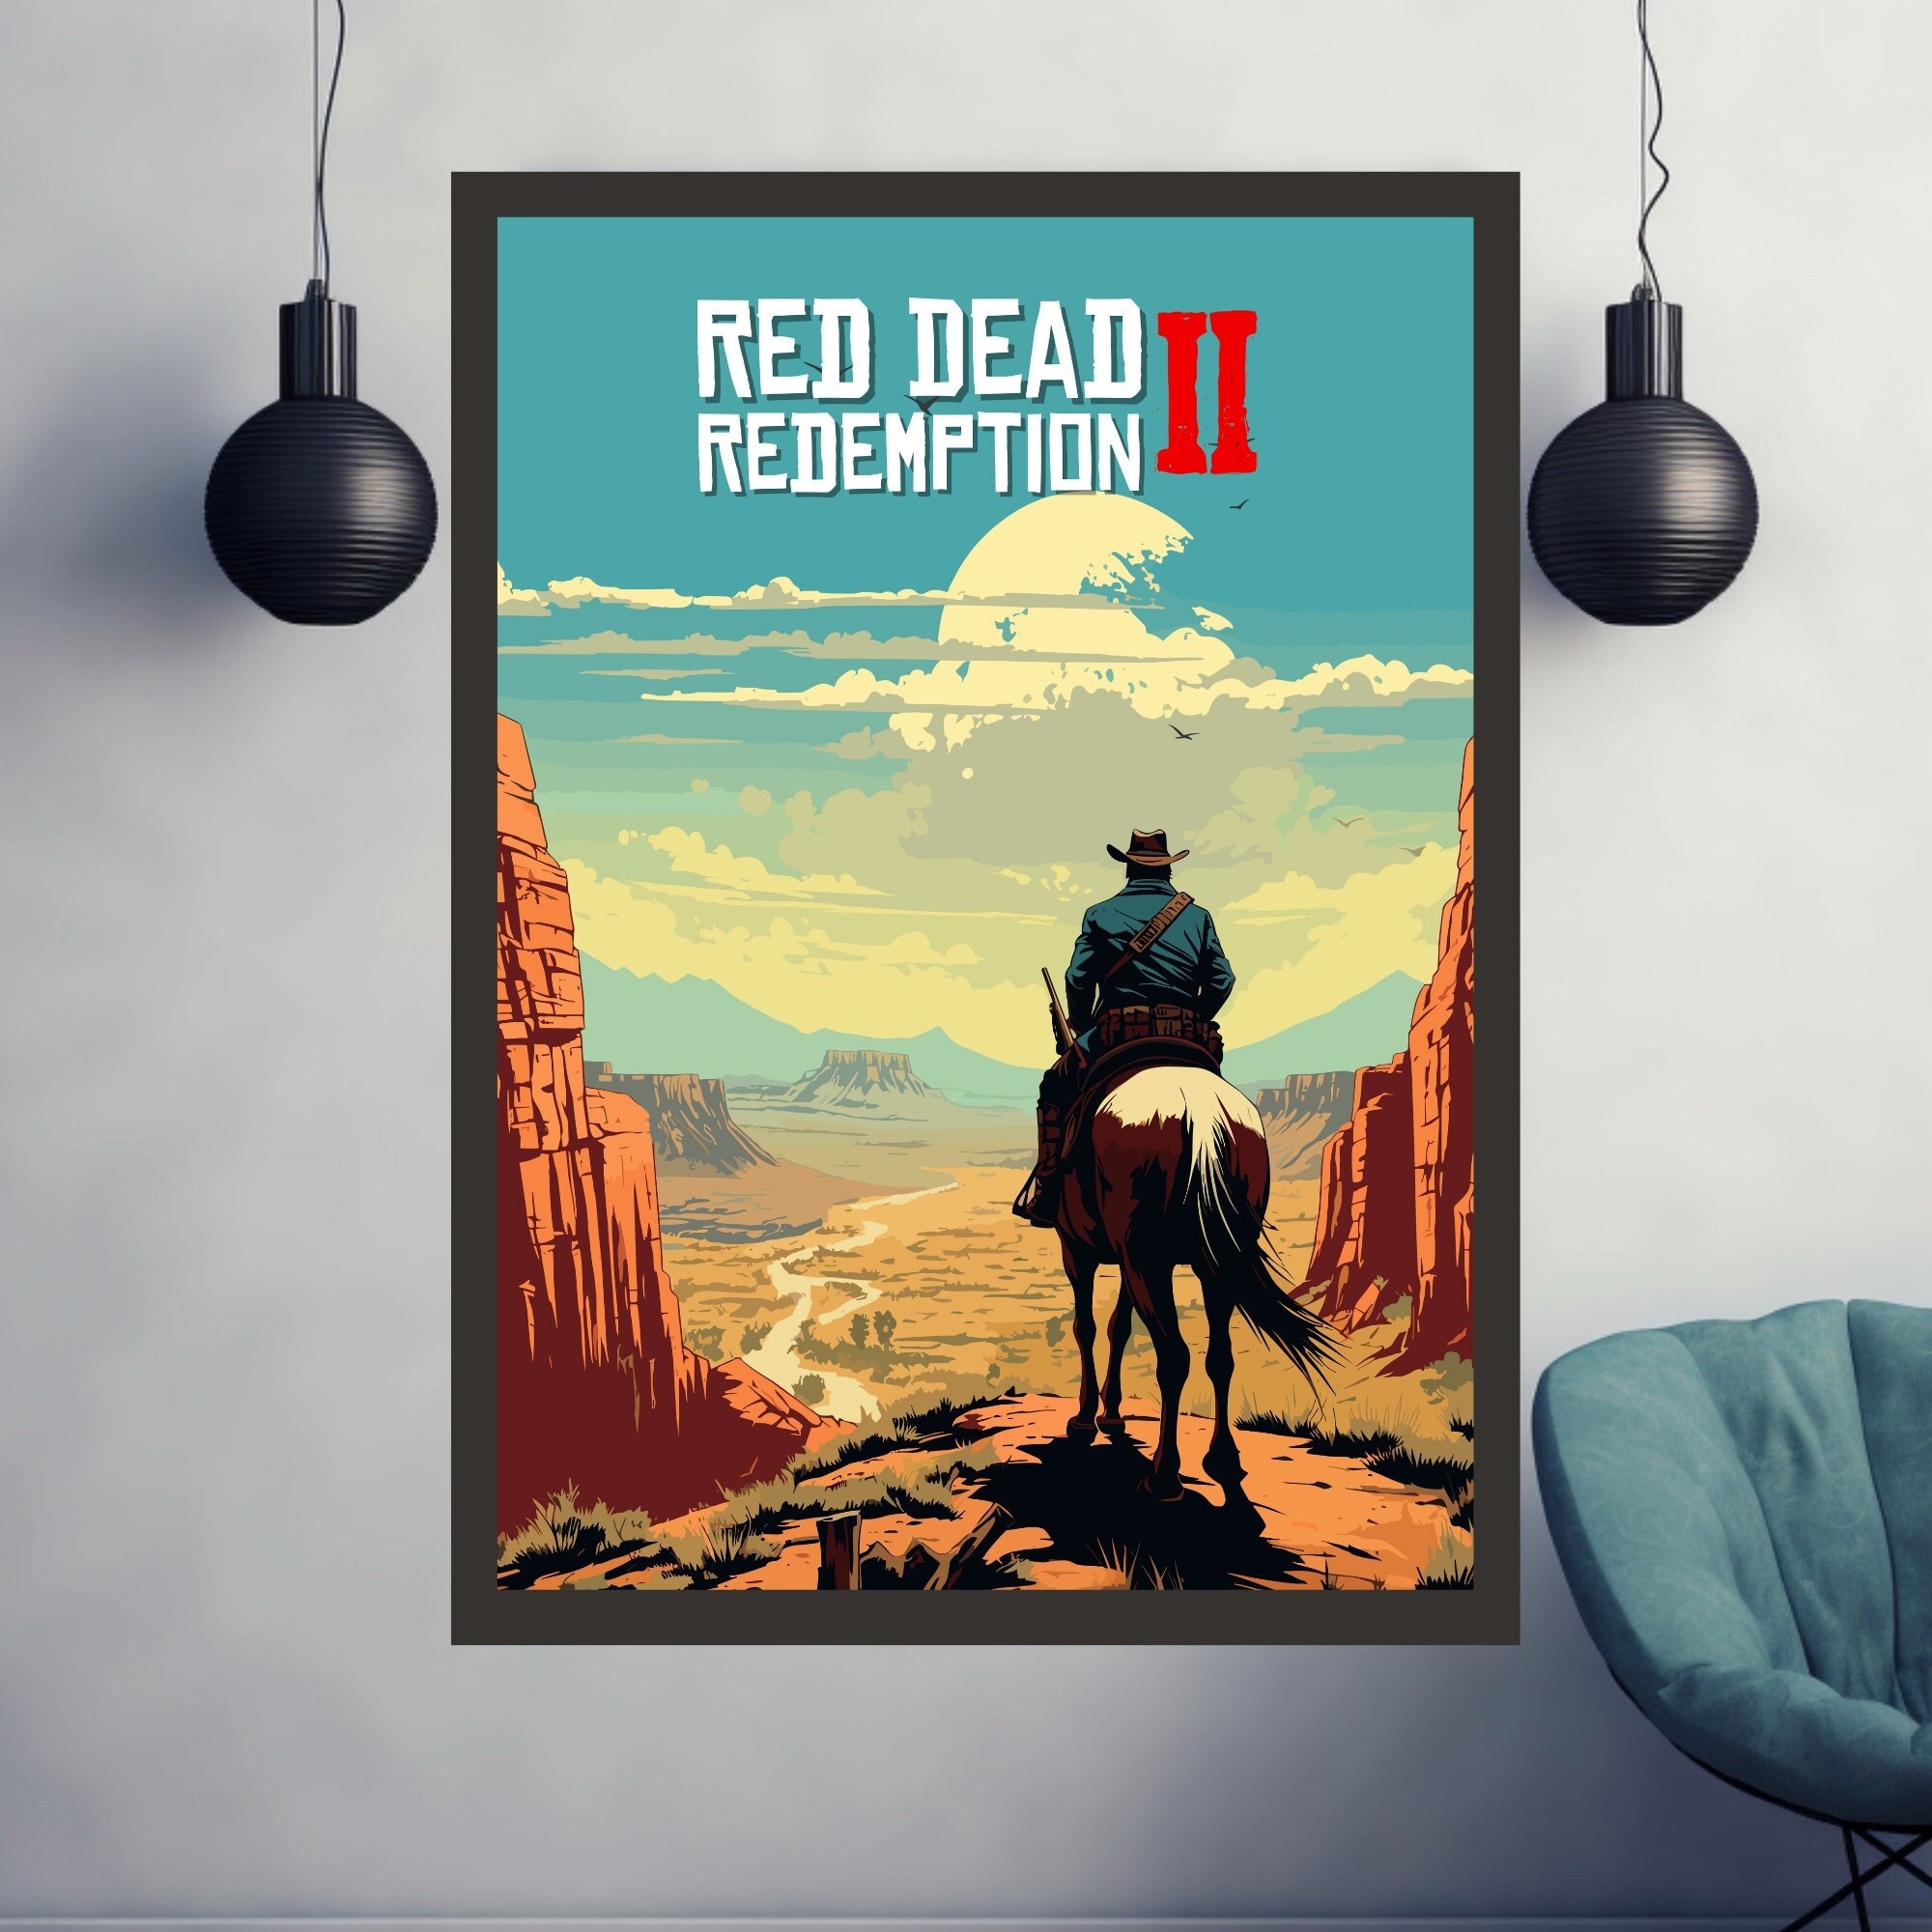 Red Dead Redemption 2 (PS4) preço mais barato: 10,57€